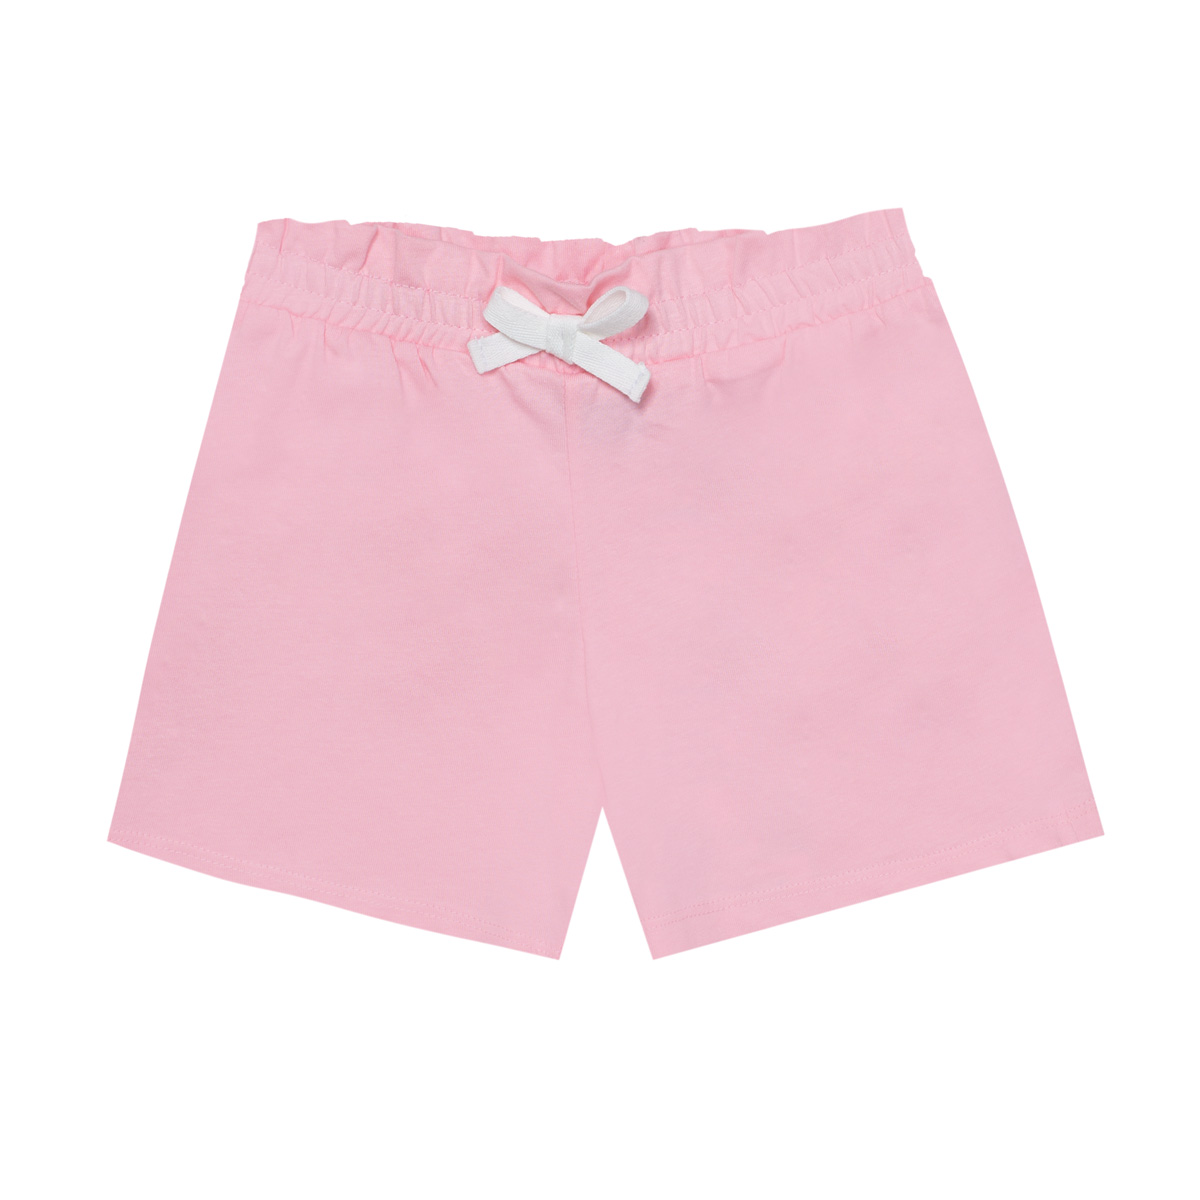 Dekliške hlače - trenirka, svetlo roza